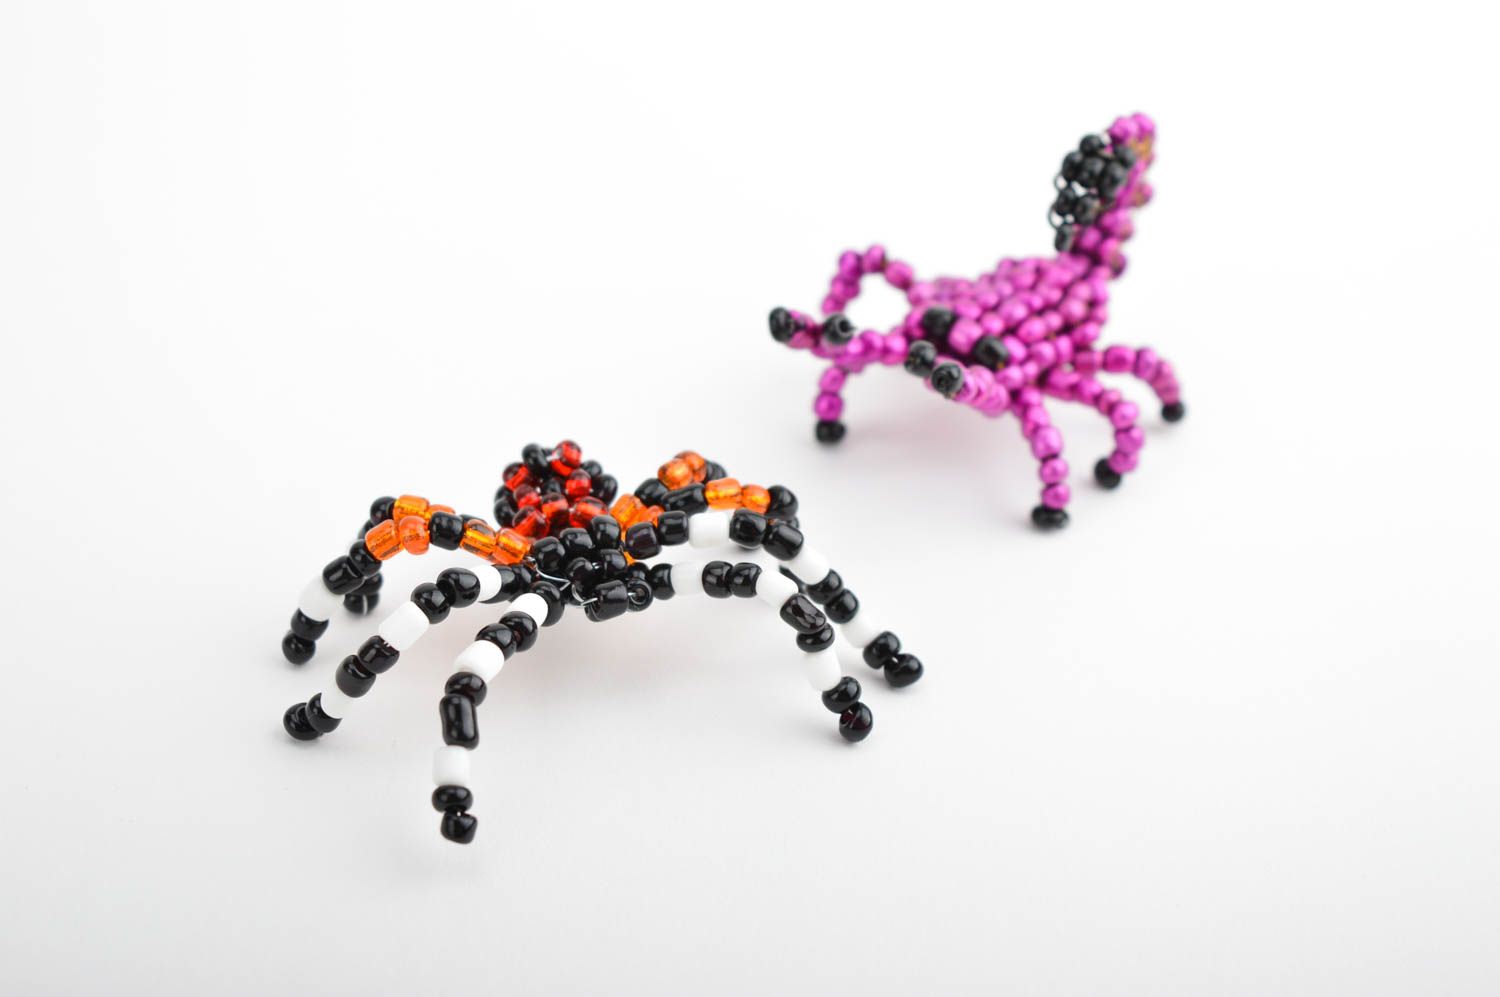 Статуэтки из бисера ручной работы паук скорпион из бисера фигурки из бисера 2 шт фото 2